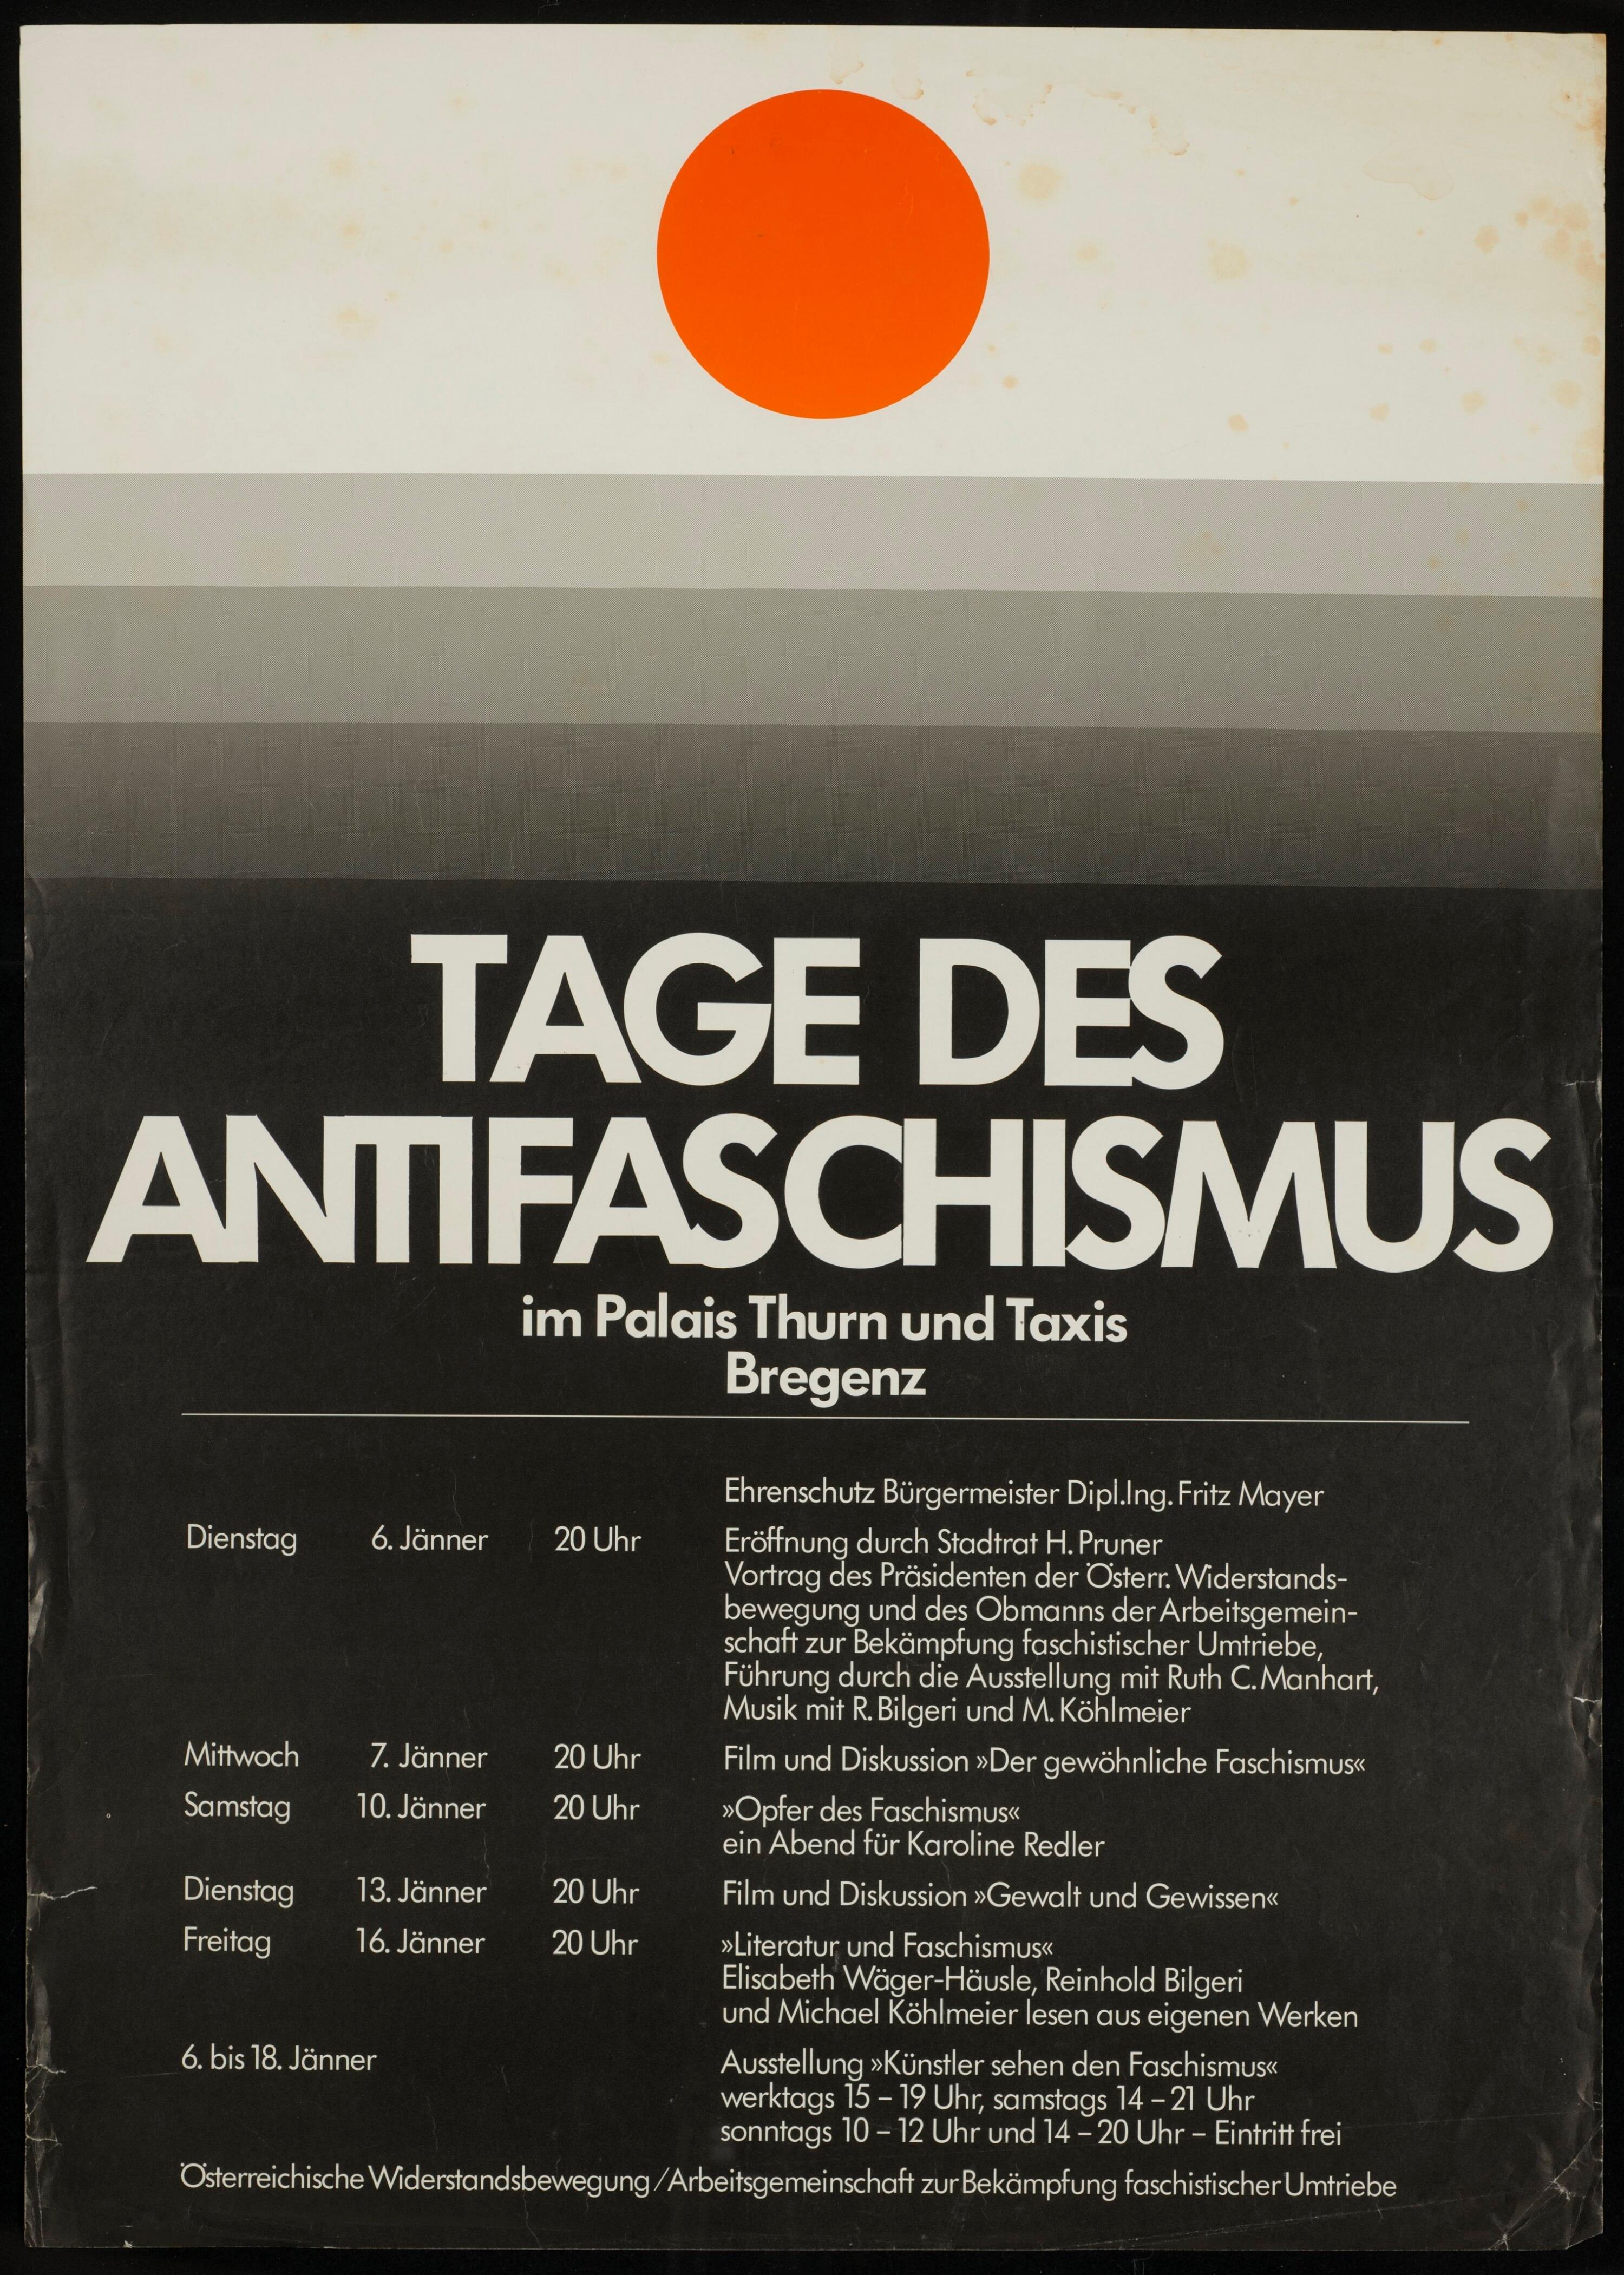 Tage des Antifaschismus im Palais Thurn und Taxis></div>


    <hr>
    <div class=